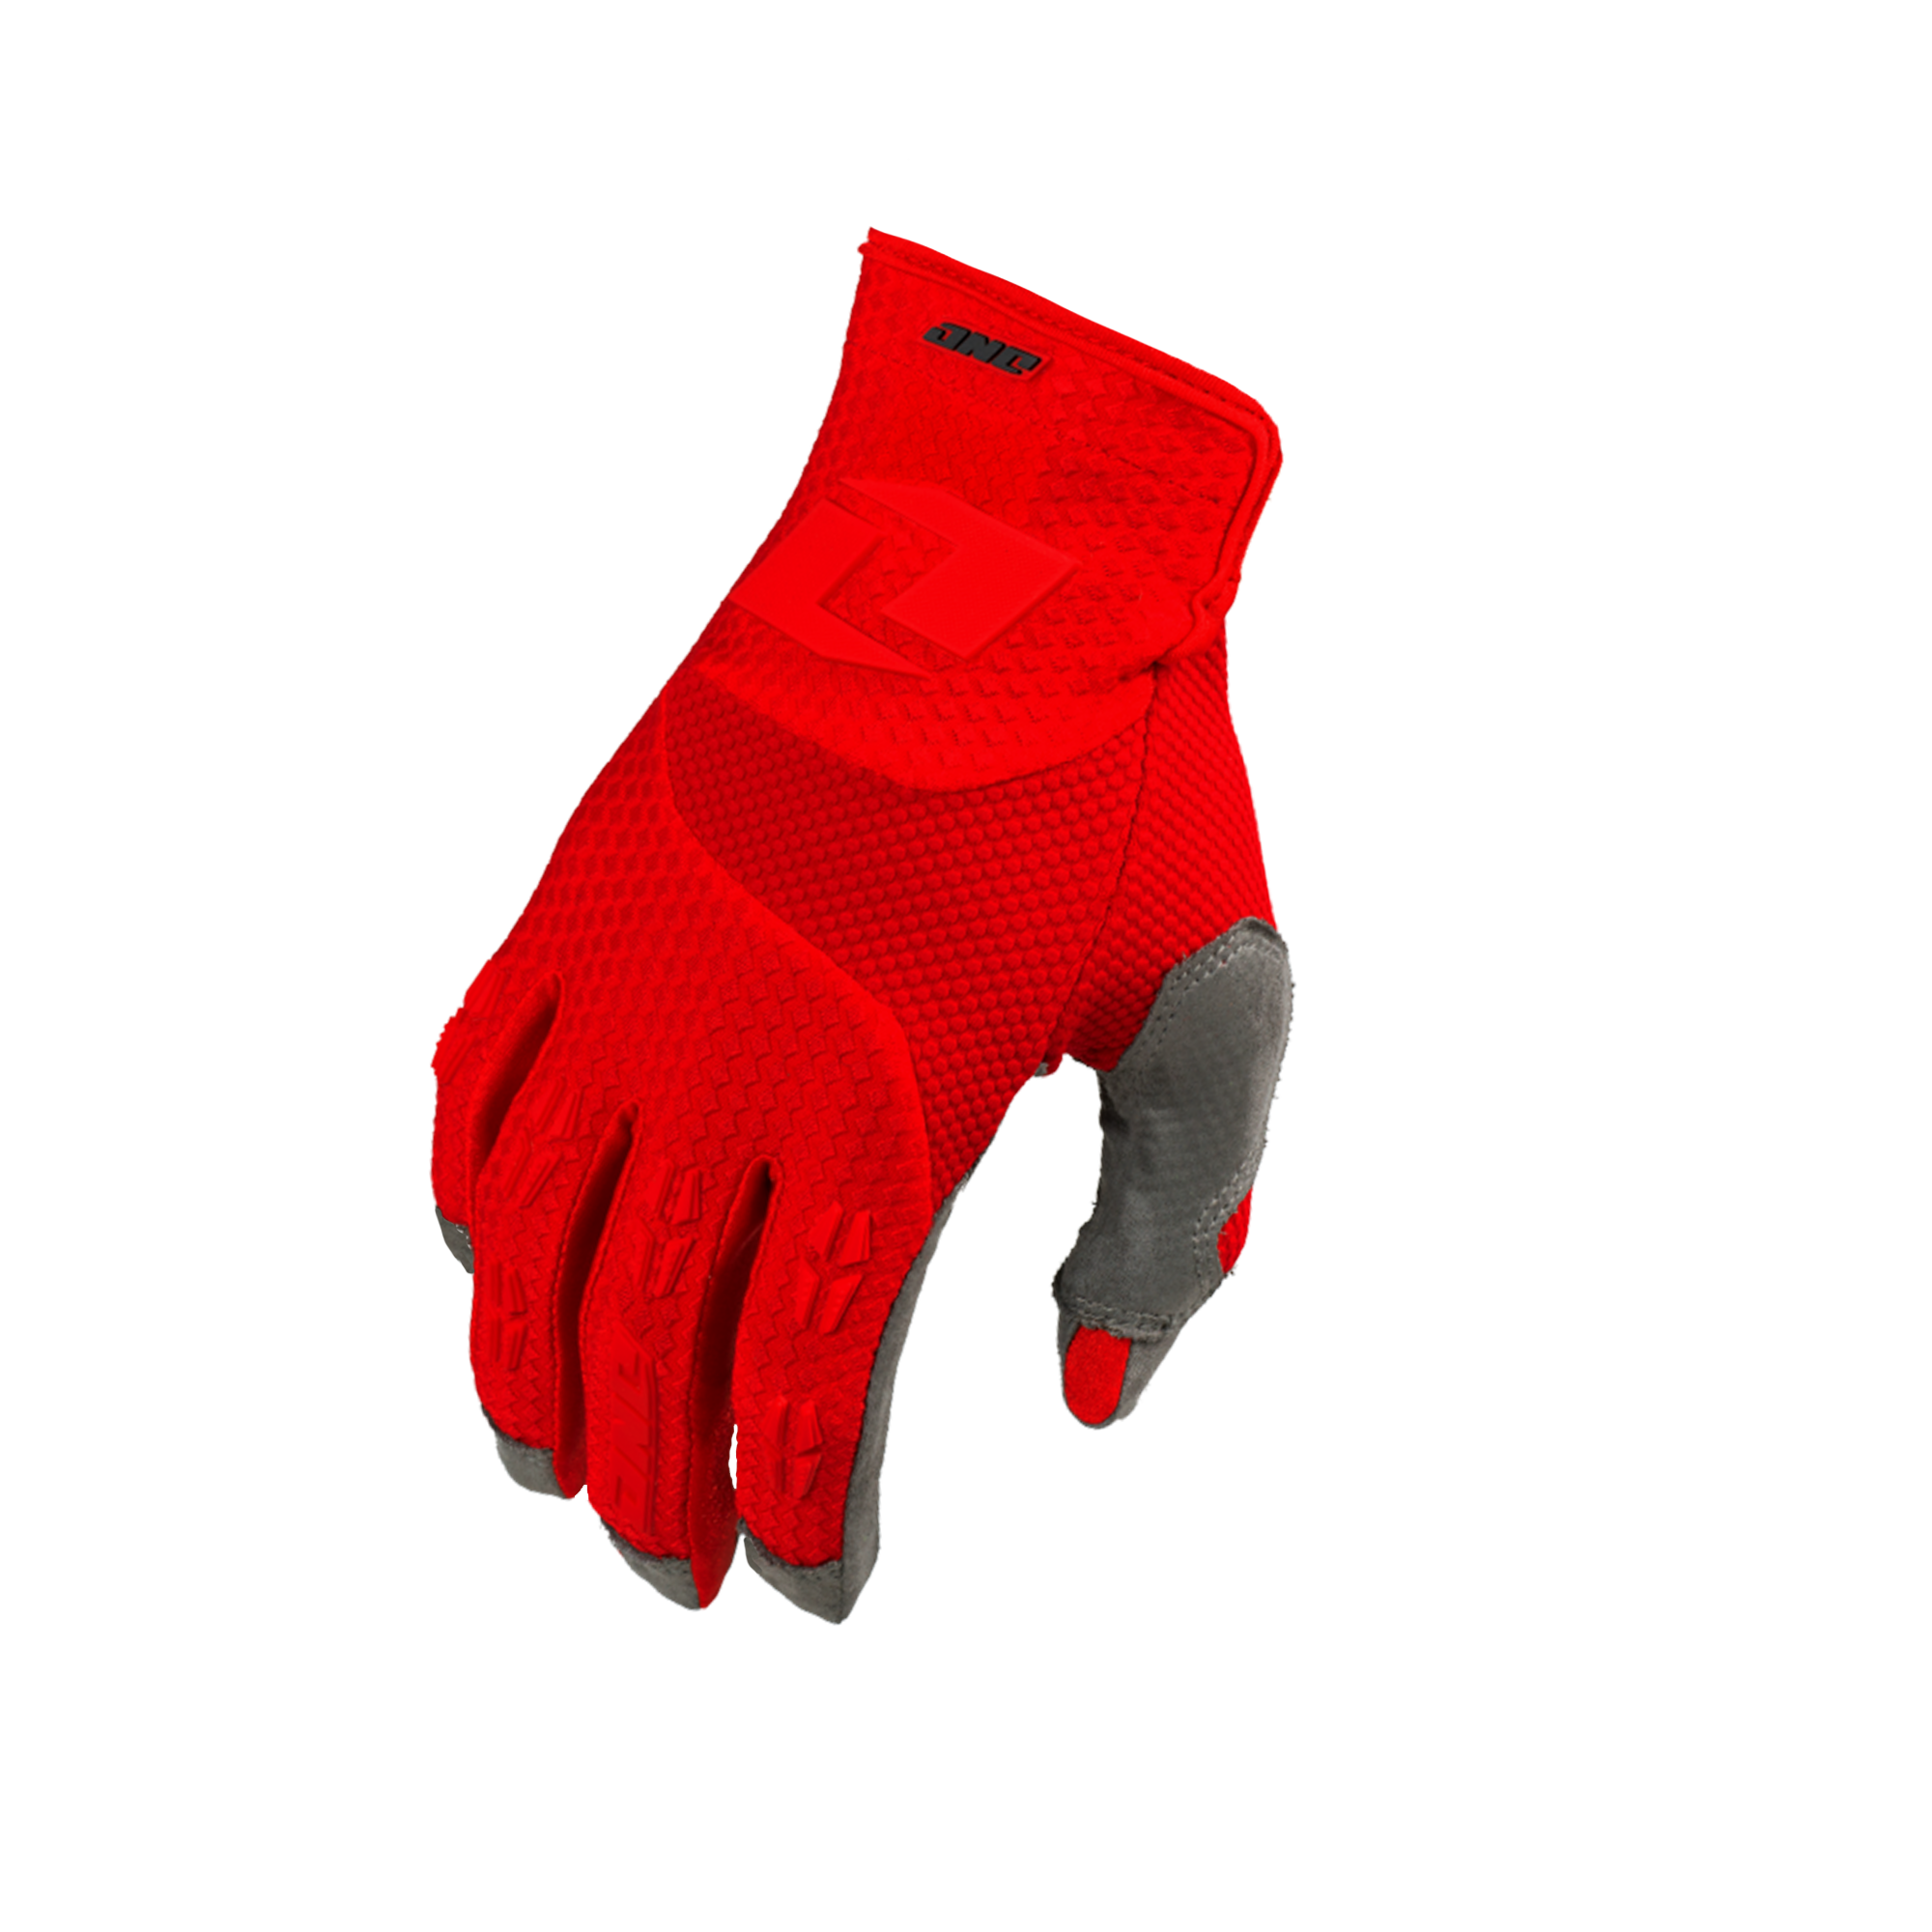 X-197 Youth Glove - HALT RED